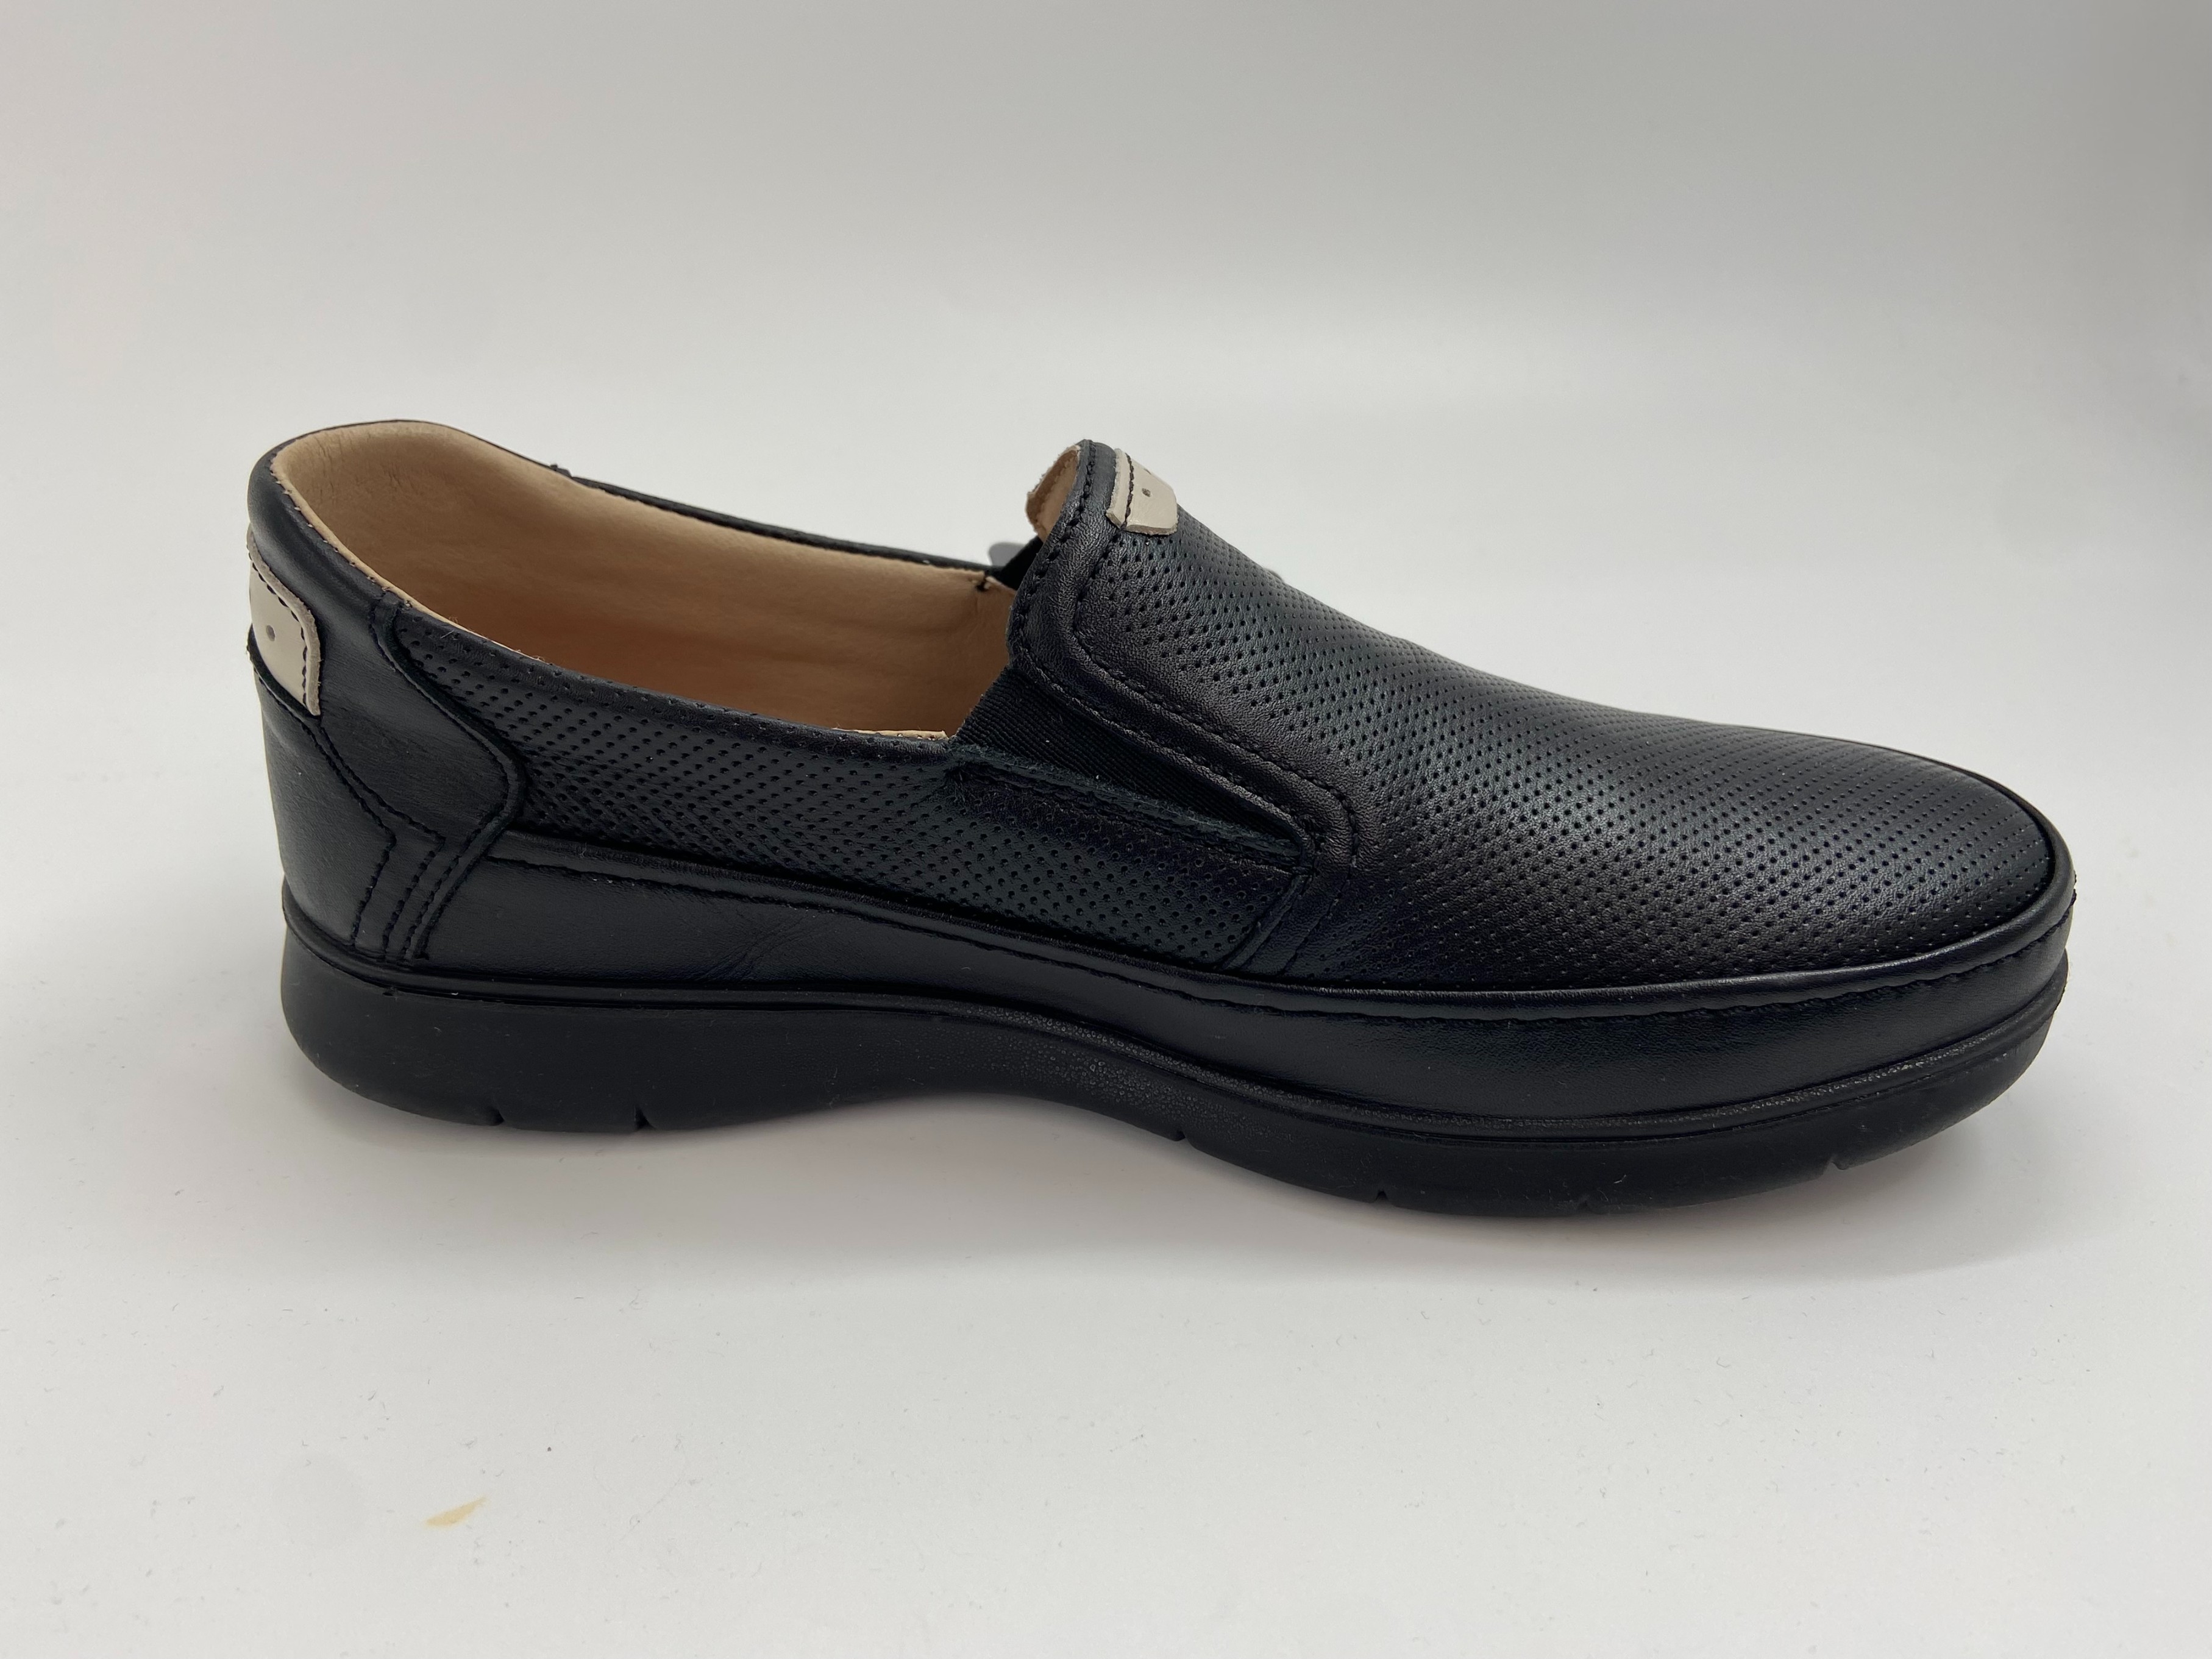 Zapatos cómodos de hombre en piel, marca Primoxc 6987